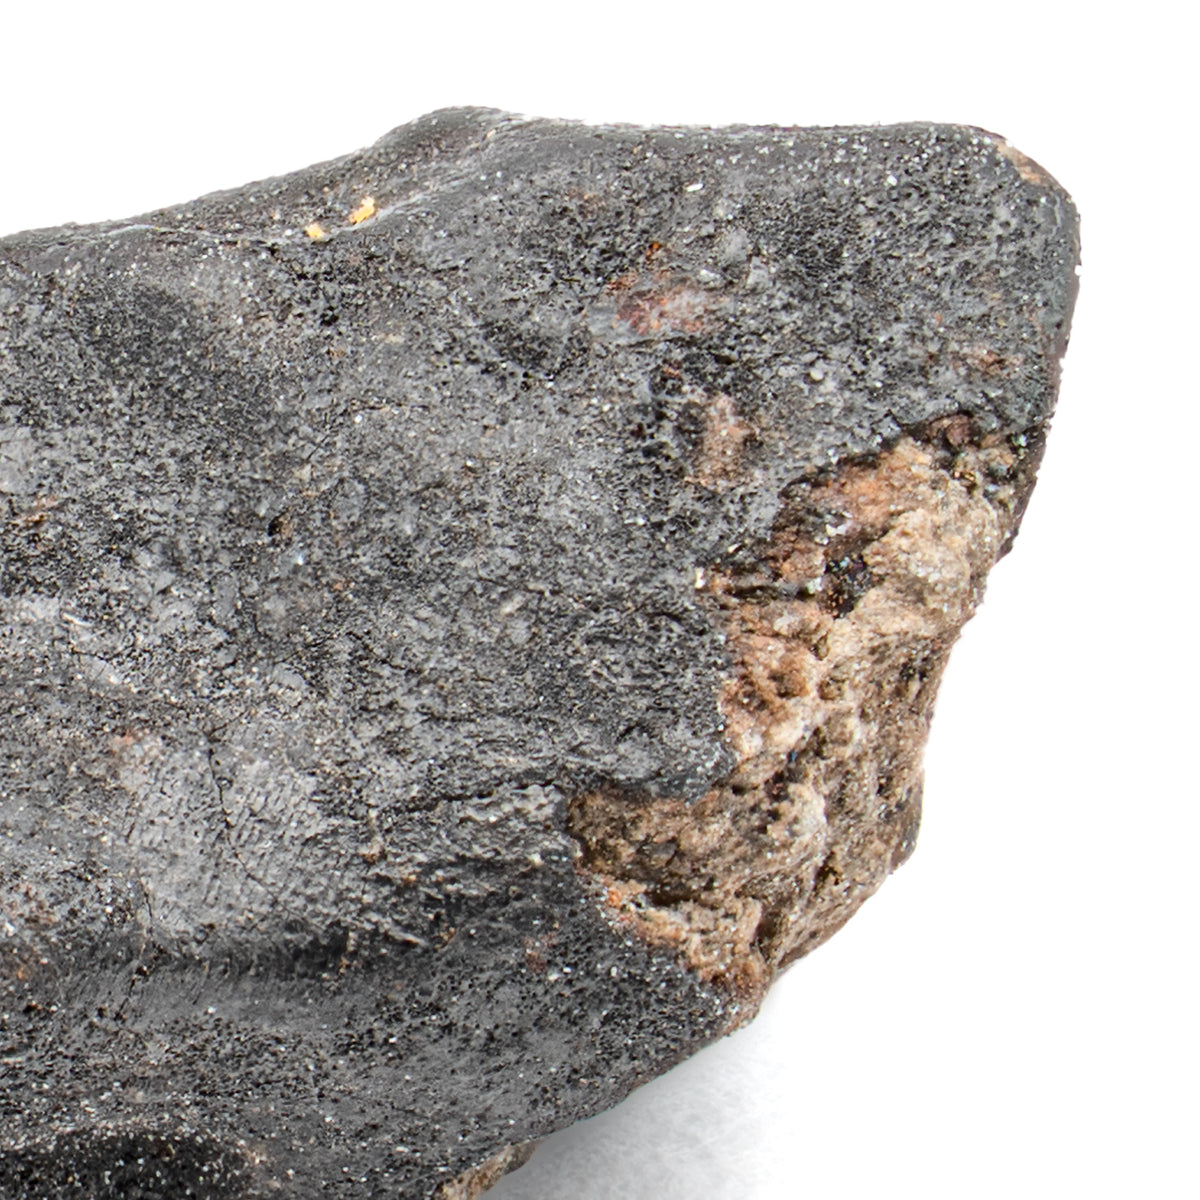 Chelyabinsk Meteorite - SOLD 1.55g Meteorite Fragment